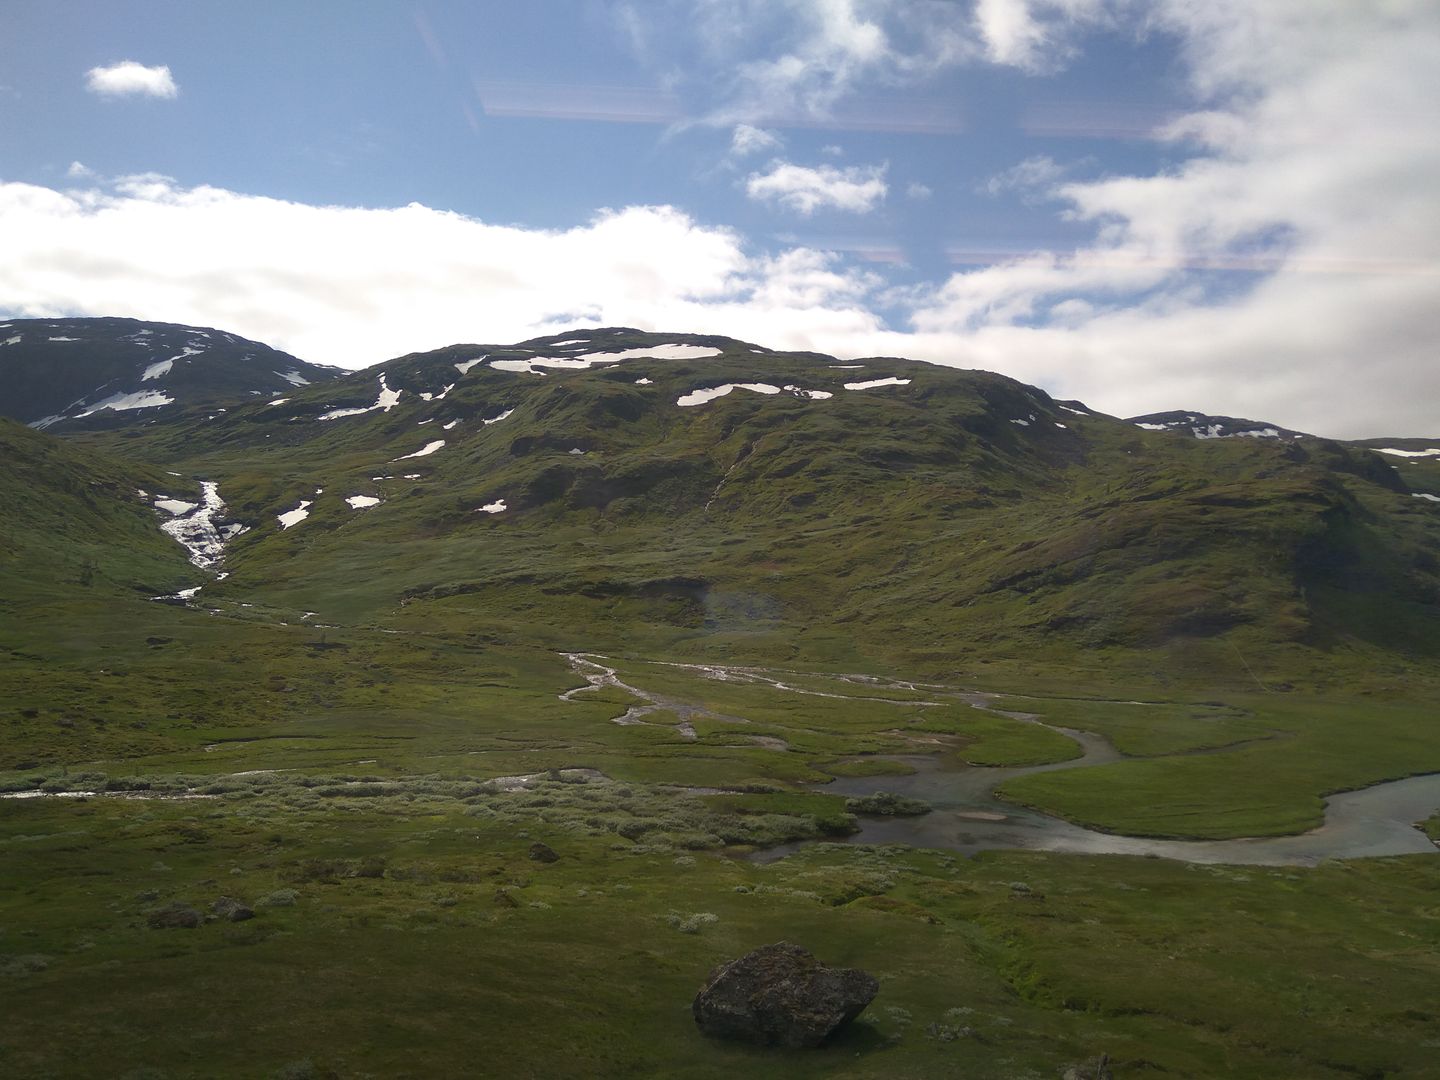 Norvegia - Calatorie Flam - Myrdal - Voss si retur cu autocarul IMG_20190628_111603_zps1xqinjhm